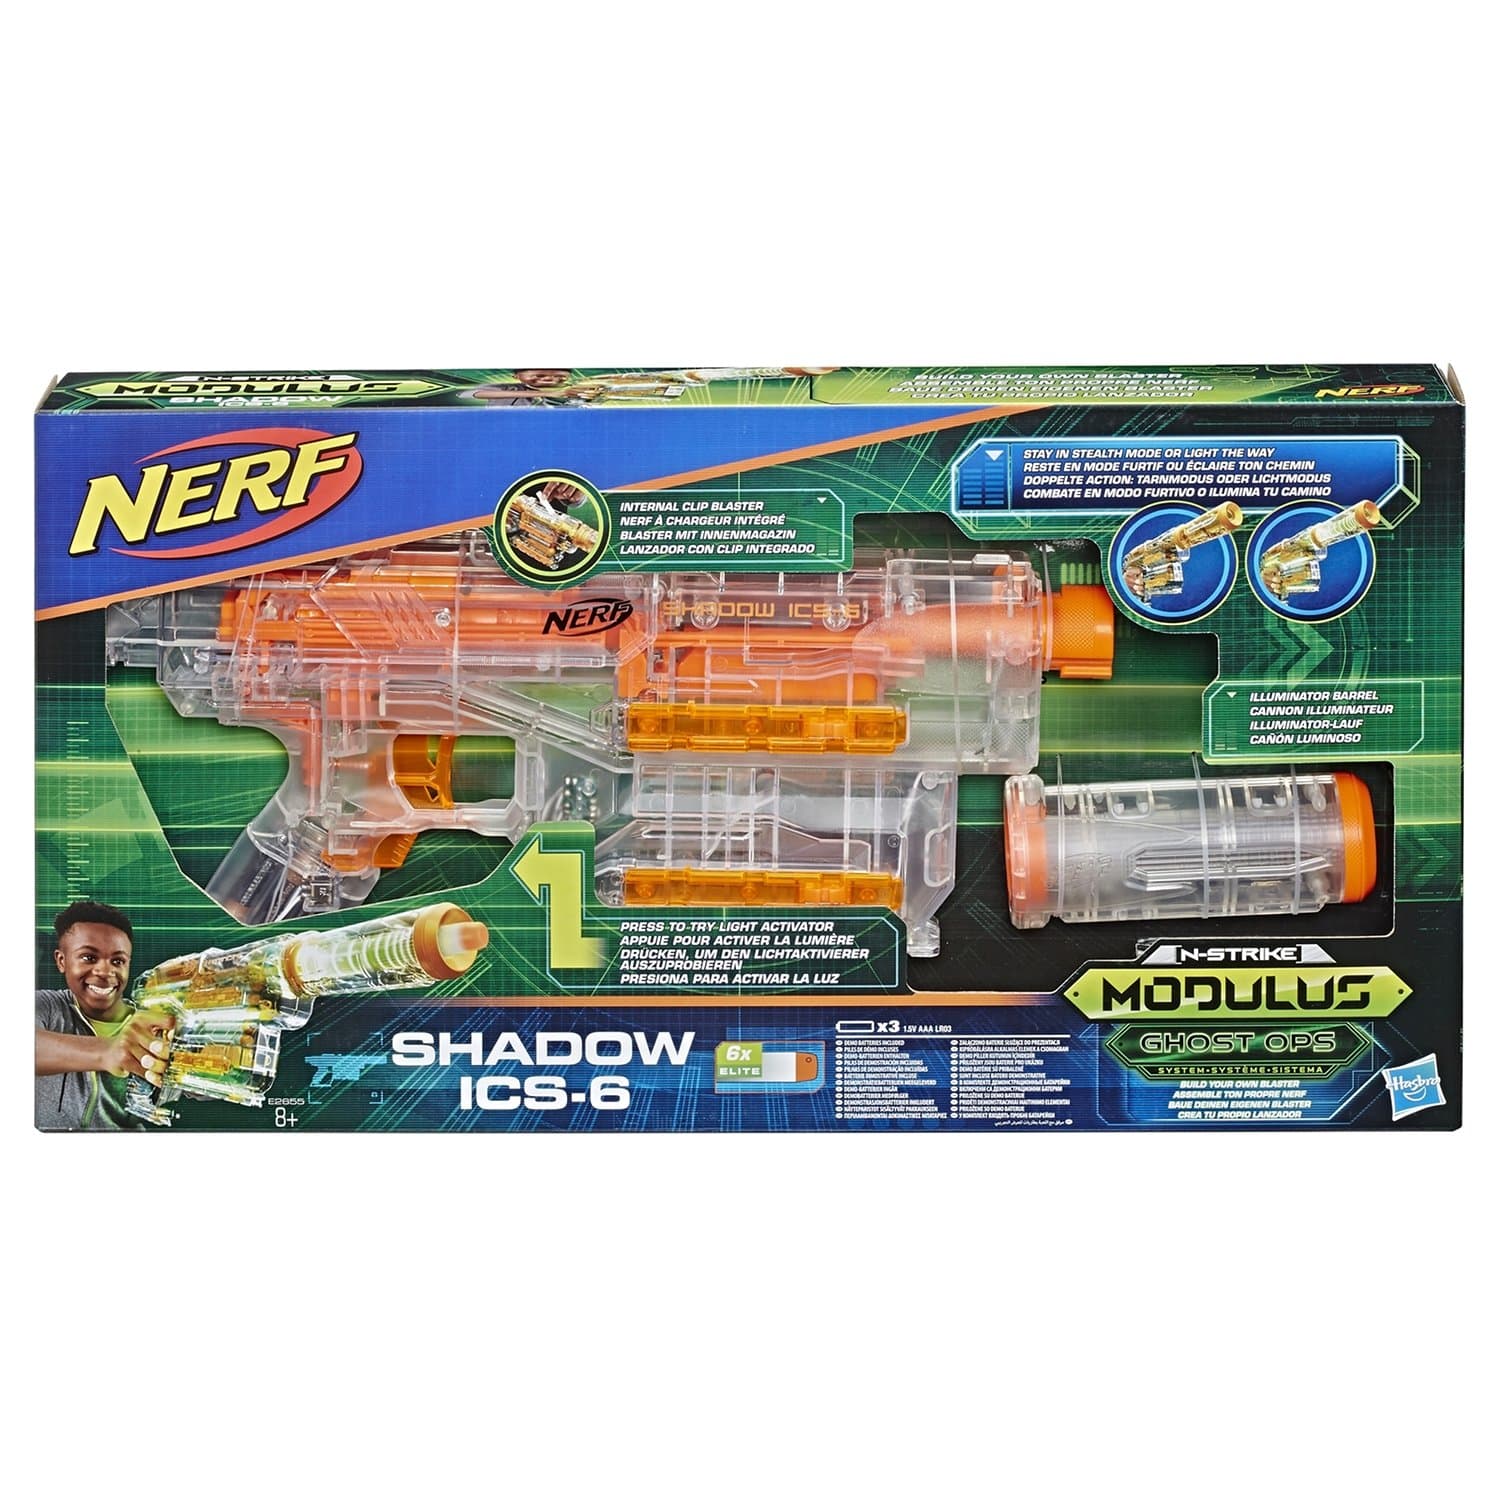 Игрушечный Бластер НЕРФ Модулус «Шэдоу» бластер со стрелами (Nerf Modulus Shadow) E2655EU4 Hasbro